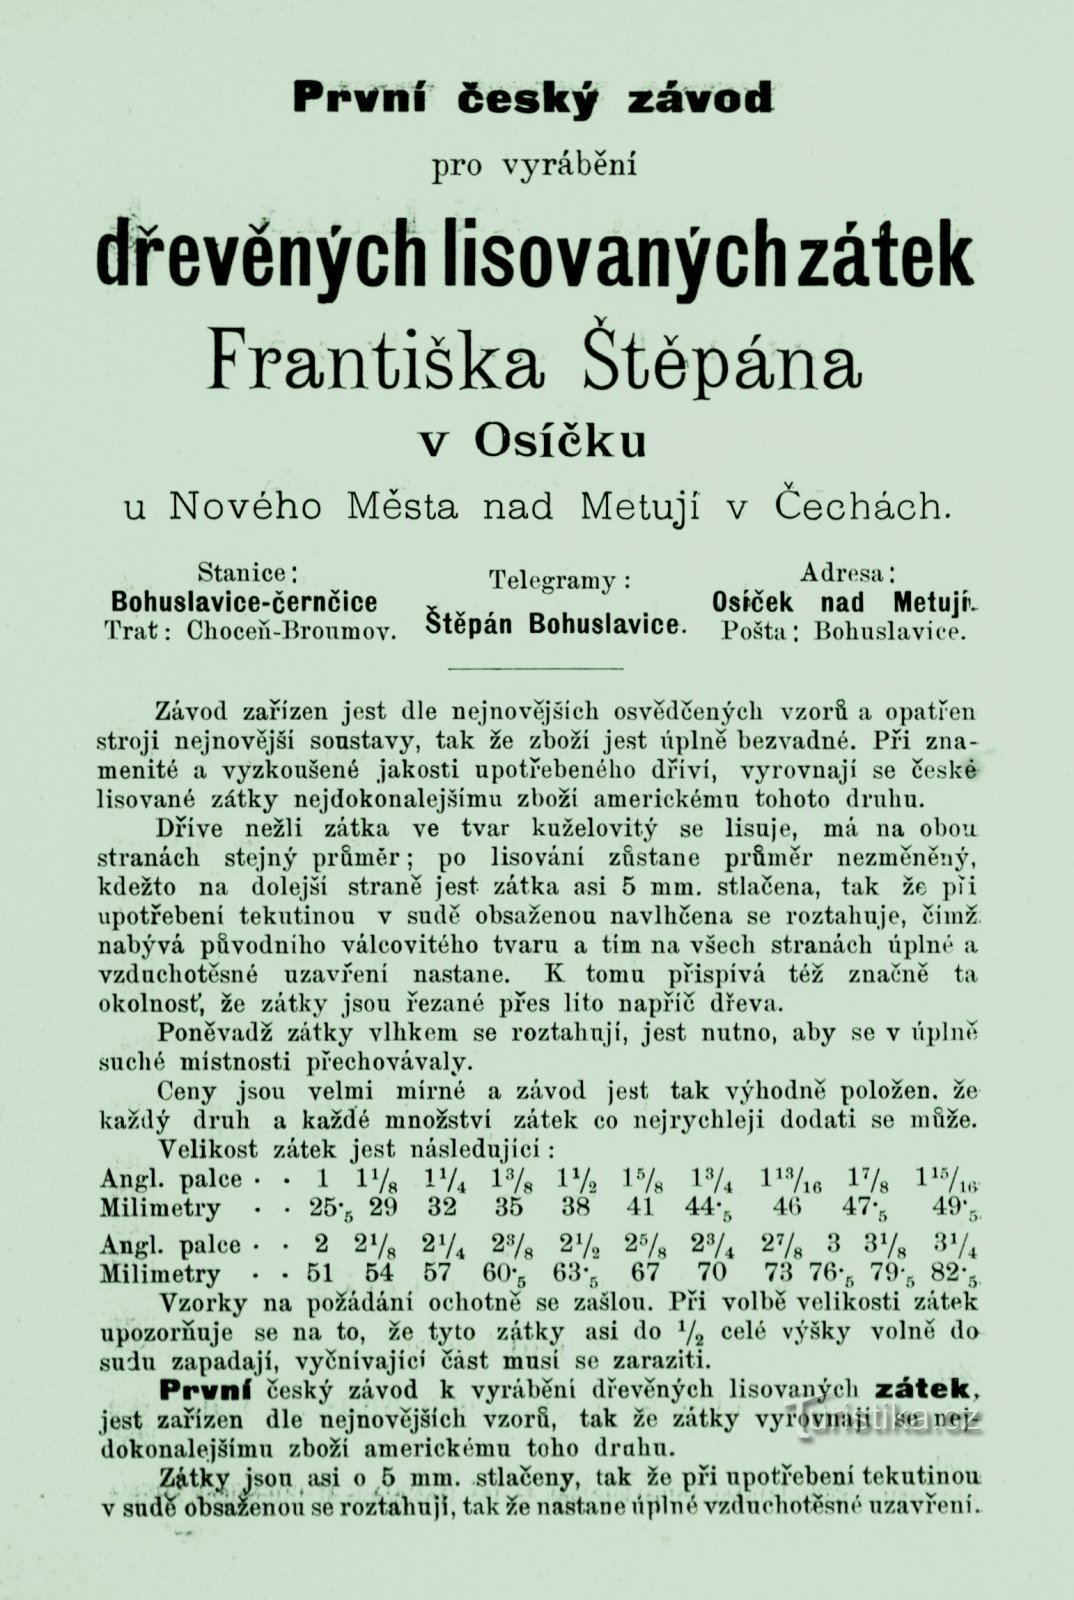 Periodični oglas mlinara Františeka Štěpána iz 1893